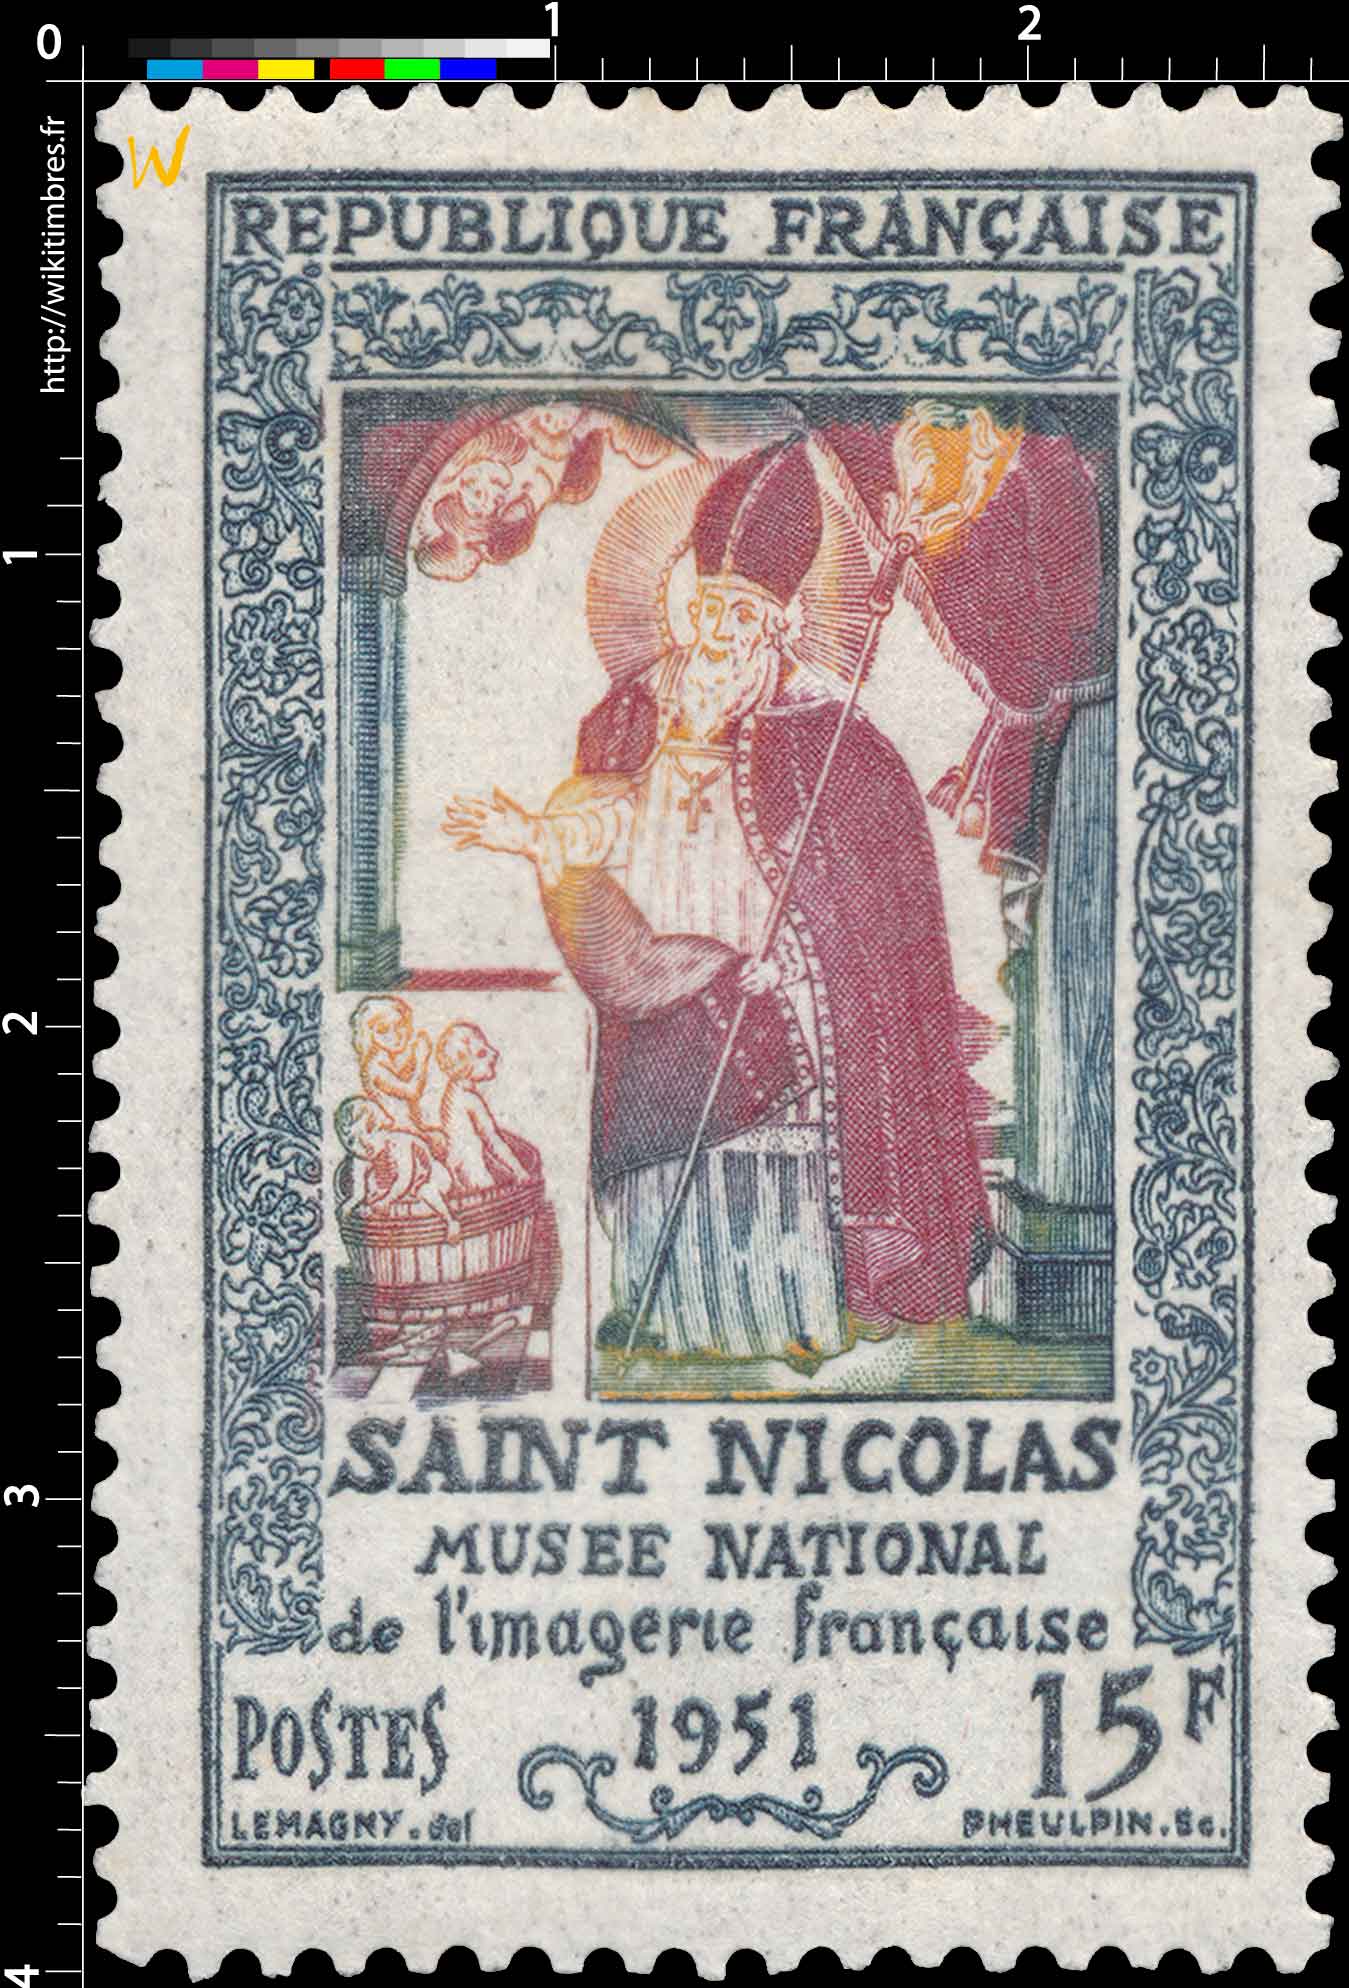 SAINT NICOLAS MUSÉE NATIONAL de l'imagerie française 1951